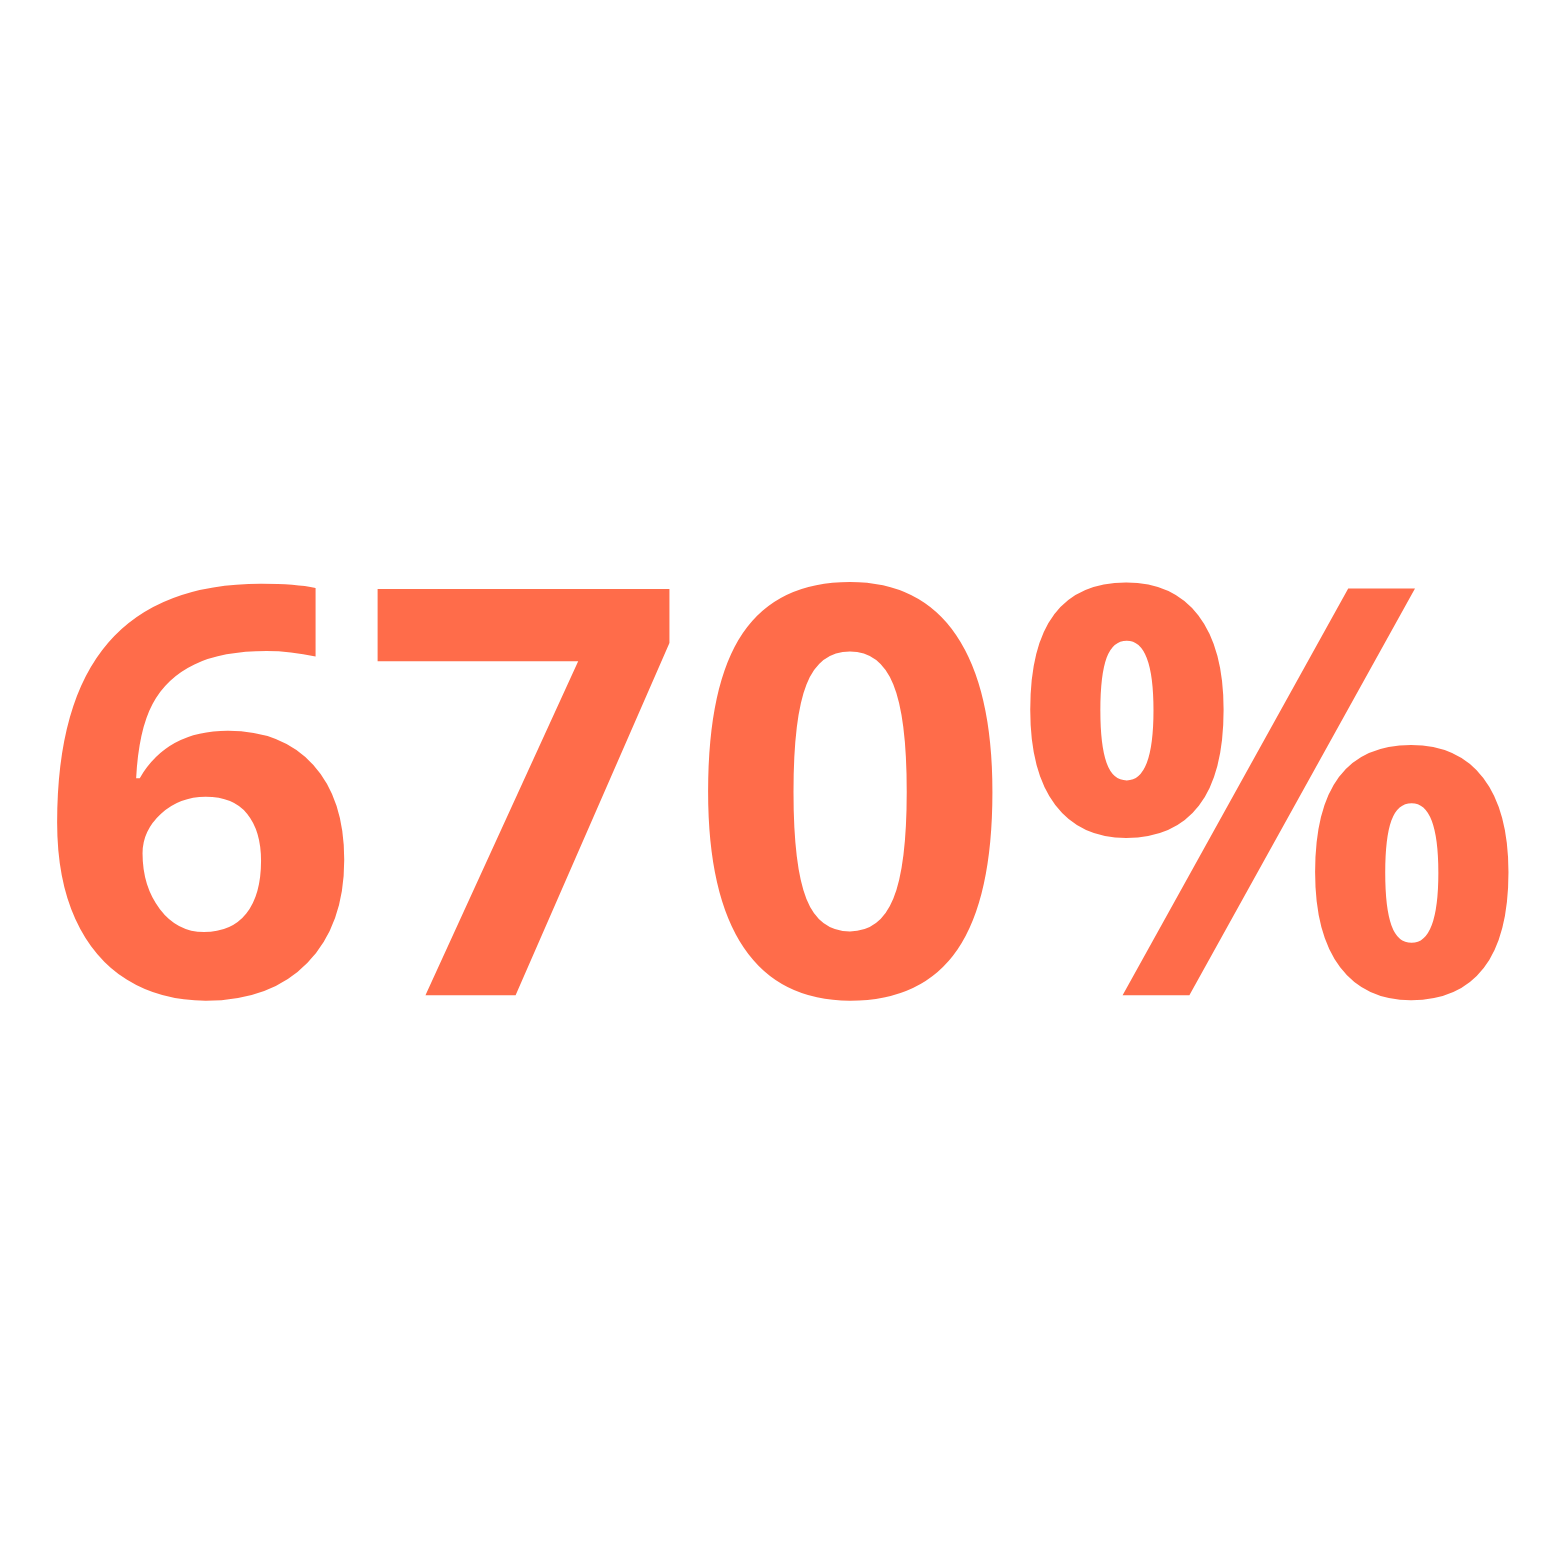 670%